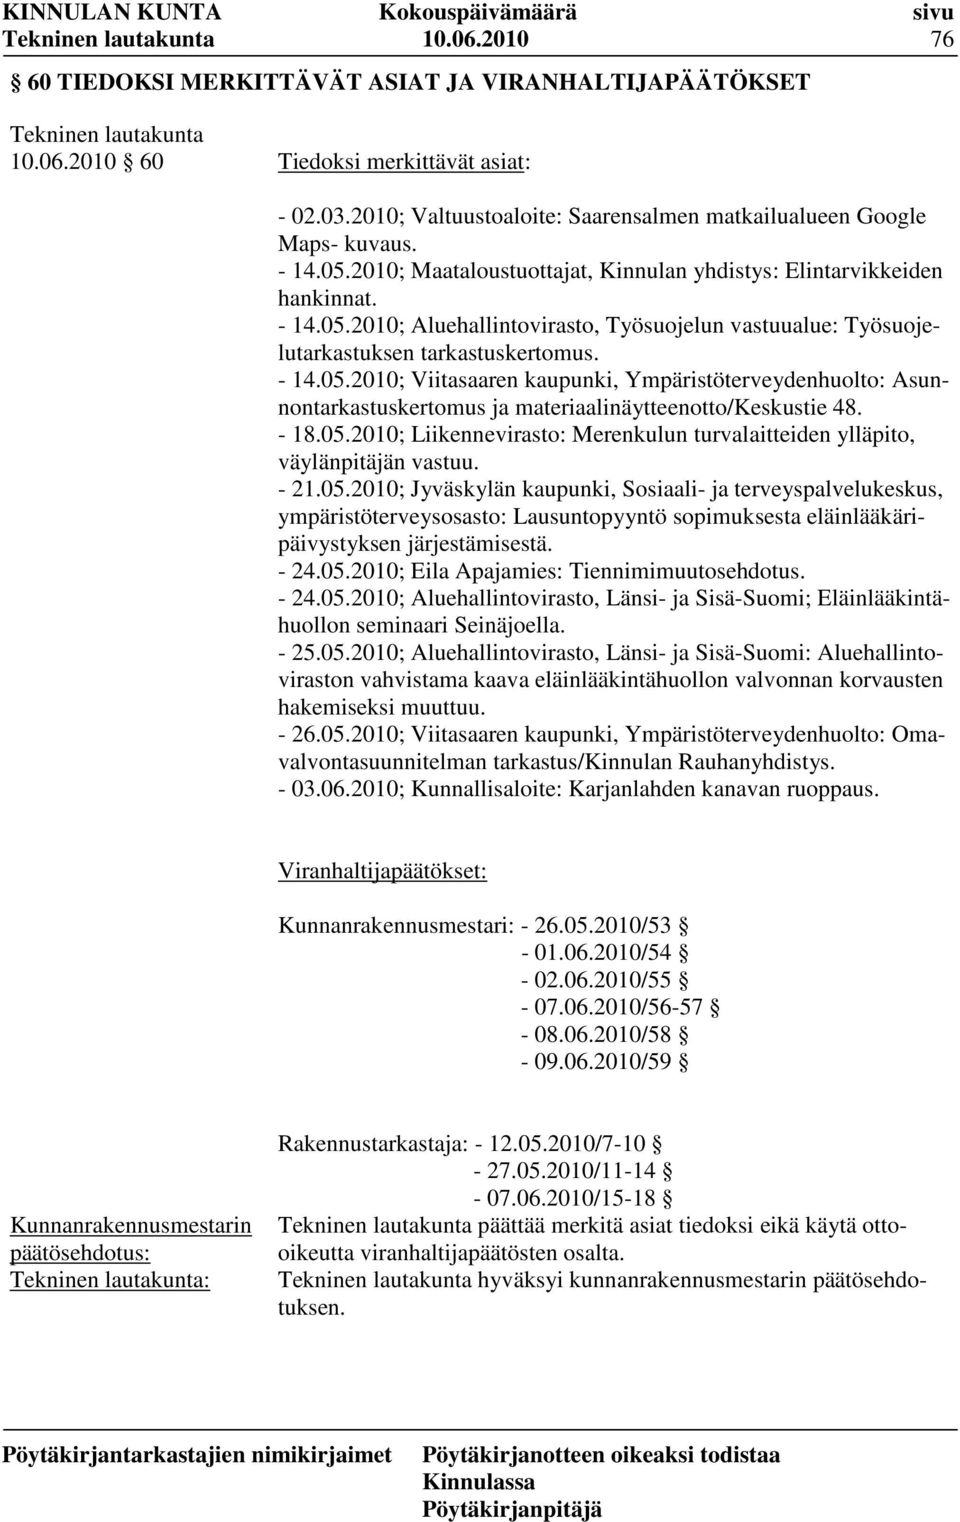 - 18.05.2010; Liikennevirasto: Merenkulun turvalaitteiden ylläpito, väylänpitäjän vastuu. - 21.05.2010; Jyväskylän kaupunki, Sosiaali- ja terveyspalvelukeskus, ympäristöterveysosasto: Lausuntopyyntö sopimuksesta eläinlääkäripäivystyksen järjestämisestä.